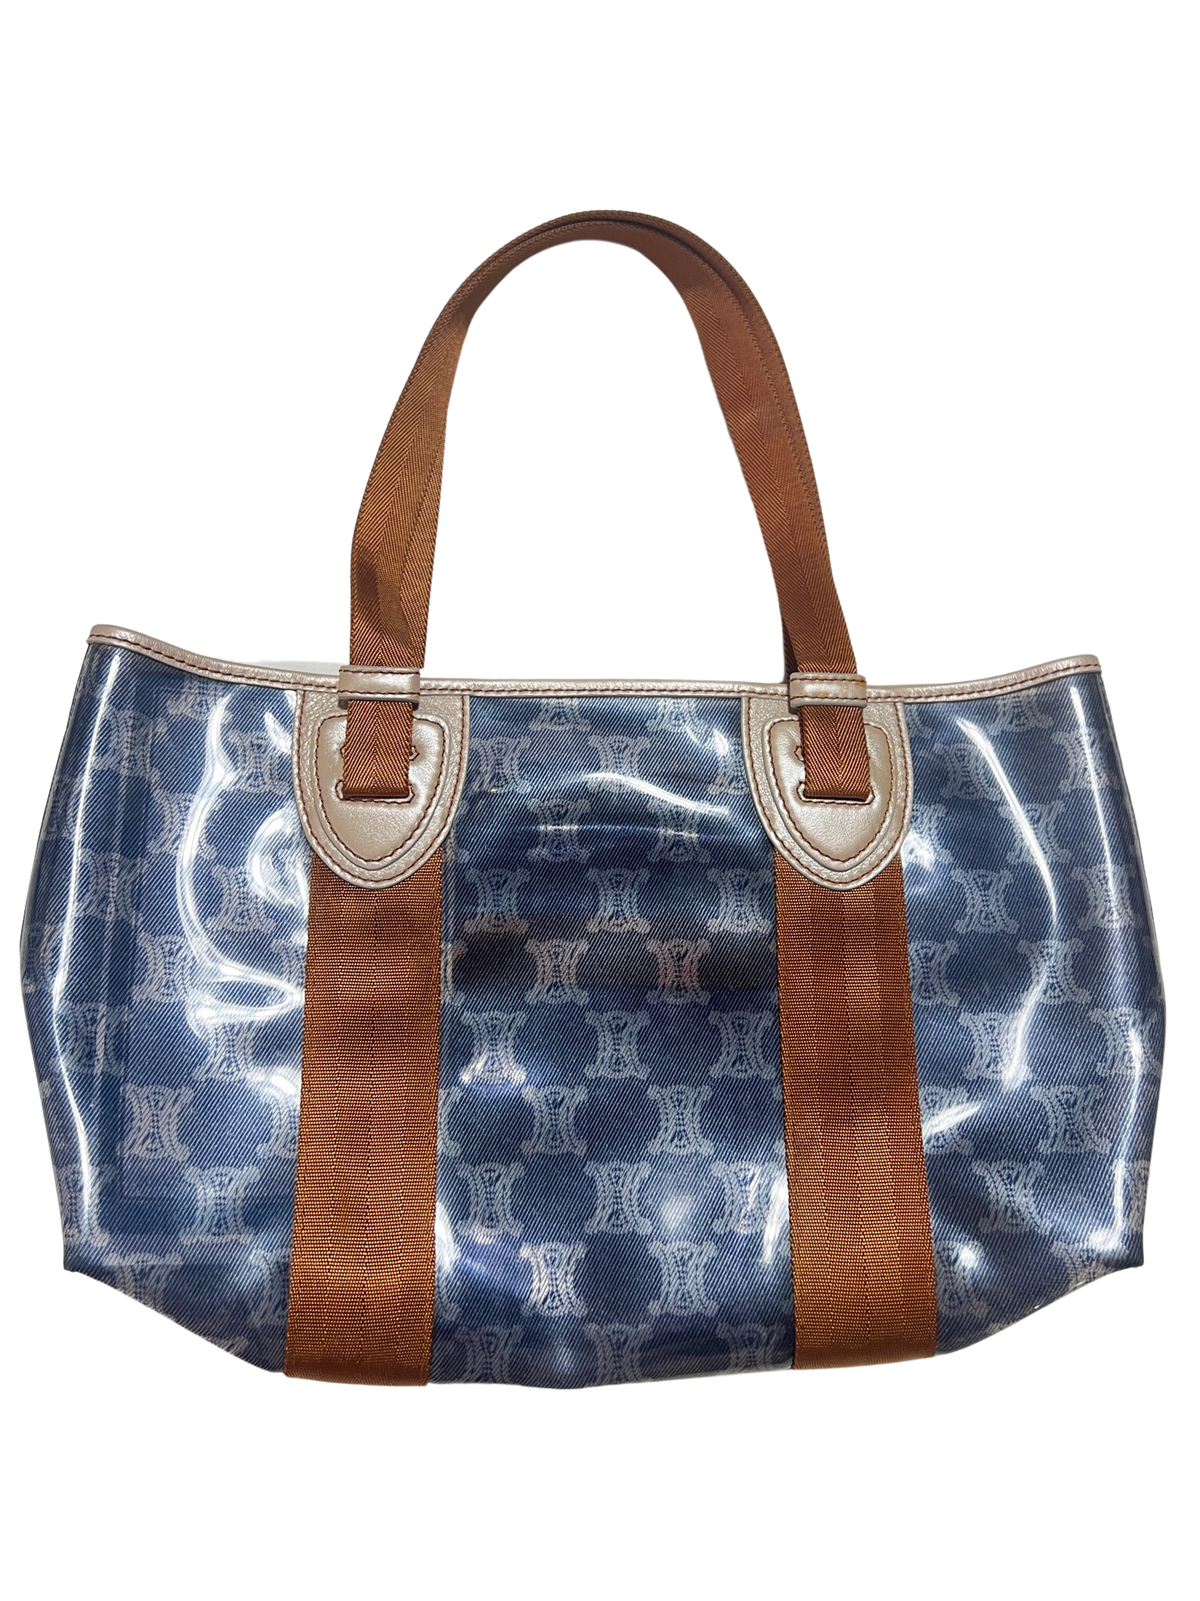 Celine- Designer Brown and Blue Handbag NEW